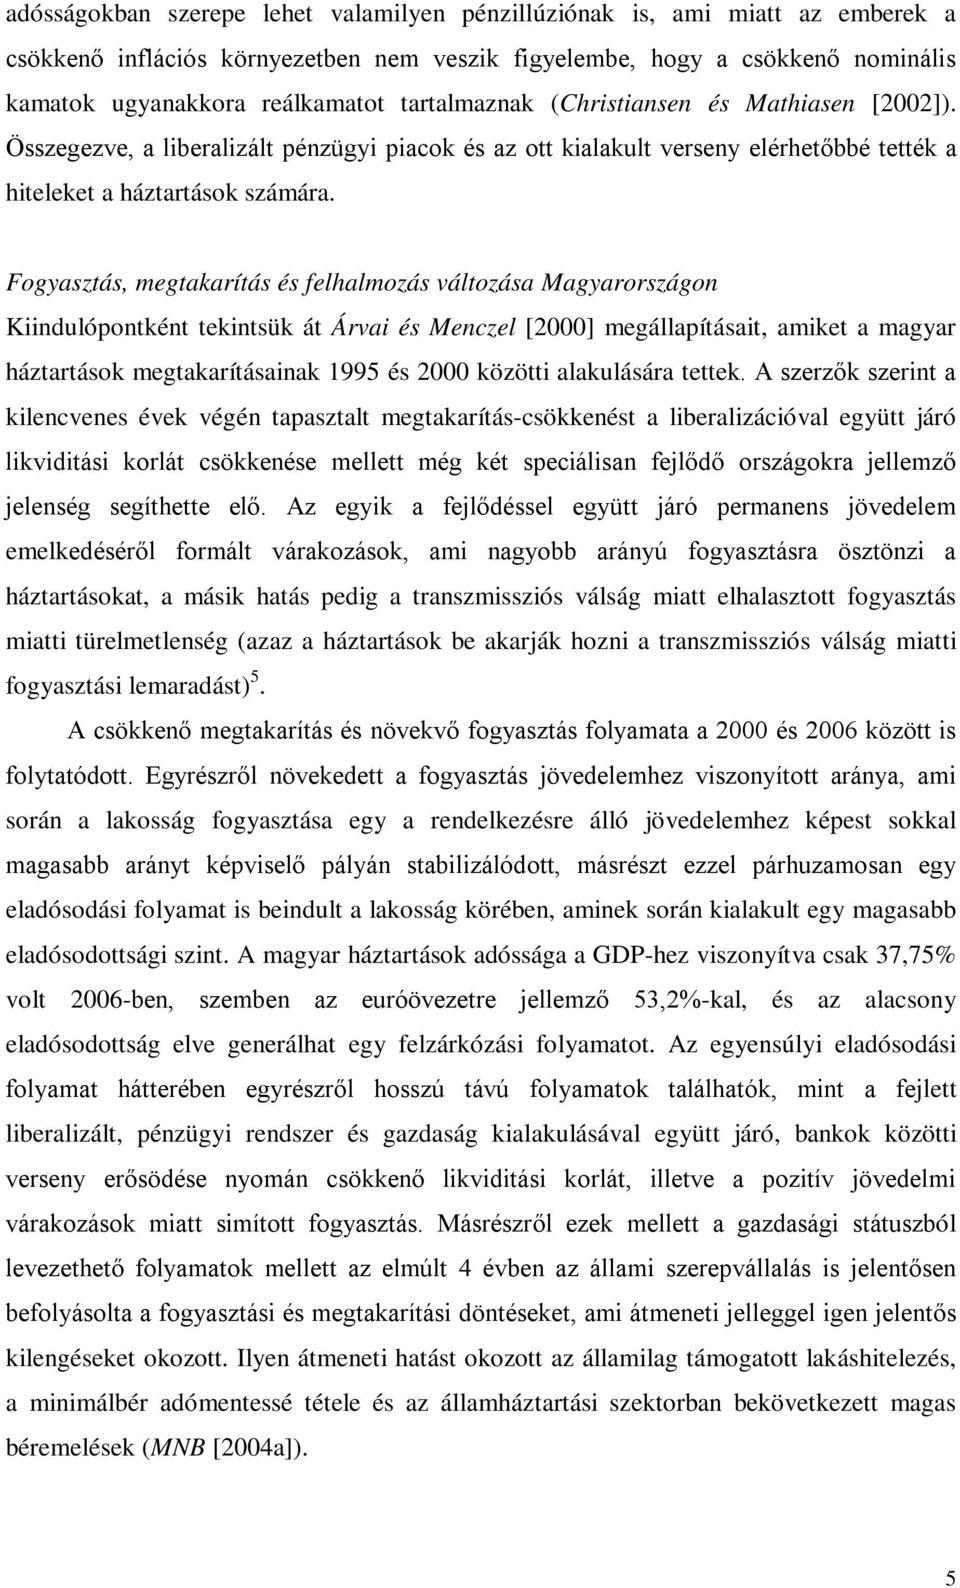 Fogyaszás, megakaríás és felhalmozás válozása Magyarországon Kiindulóponkén ekinsük á Árvai és Menczel [2000] megállapíásai, amike a magyar házarások megakaríásainak 1995 és 2000 közöi alakulására